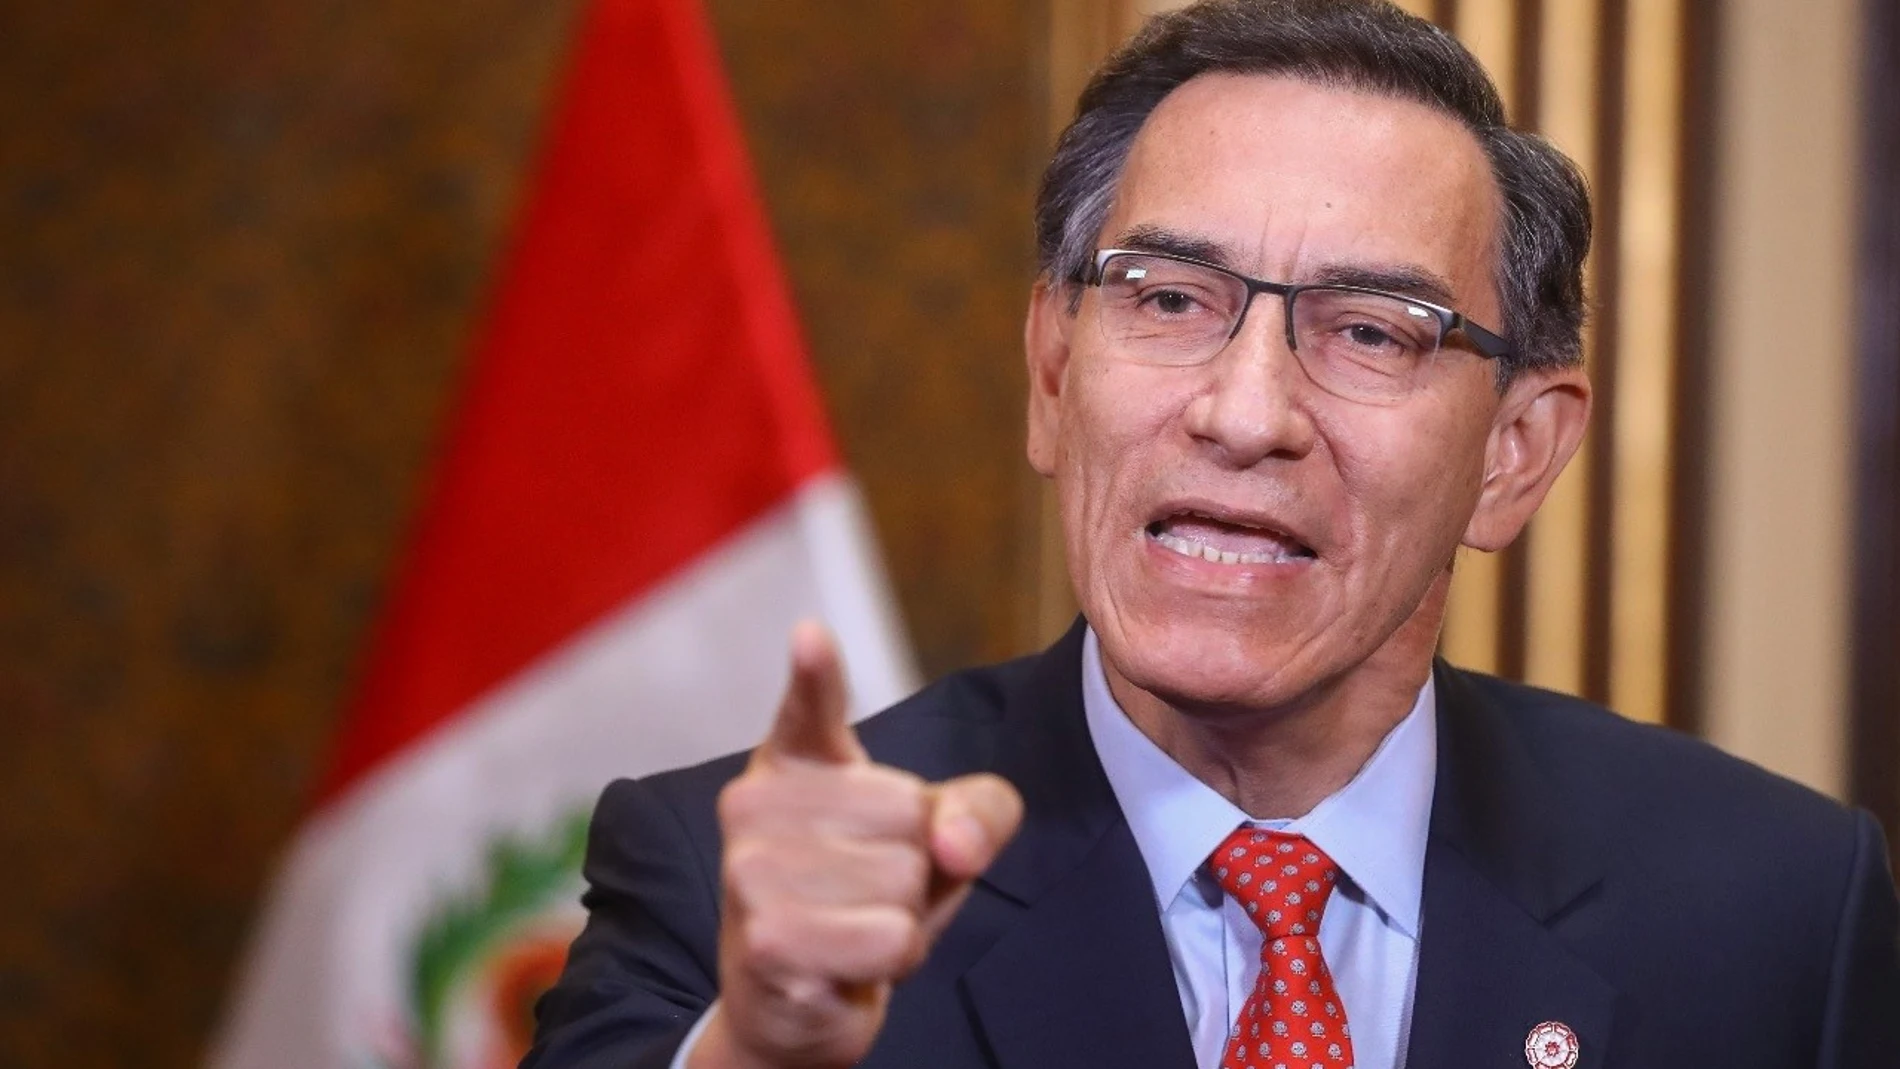 Perú.- Vizcarra convoca un referéndum de reforma constitucional en Perú para eliminar la inmunidad parlamentaria